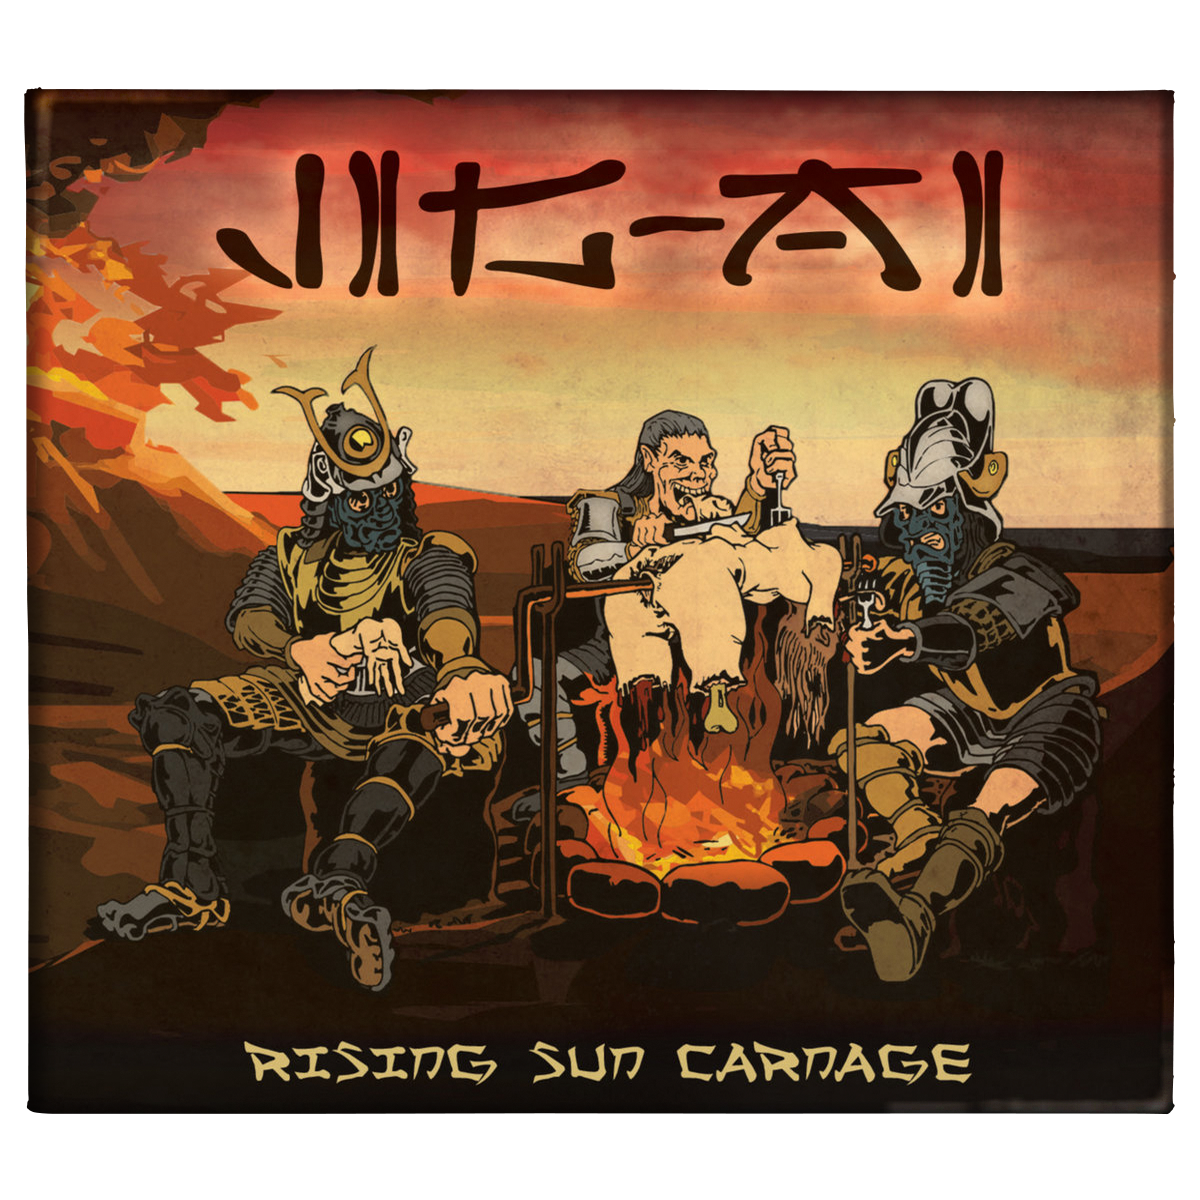 Jig-Ai 'Rising Sun Carnage' CD